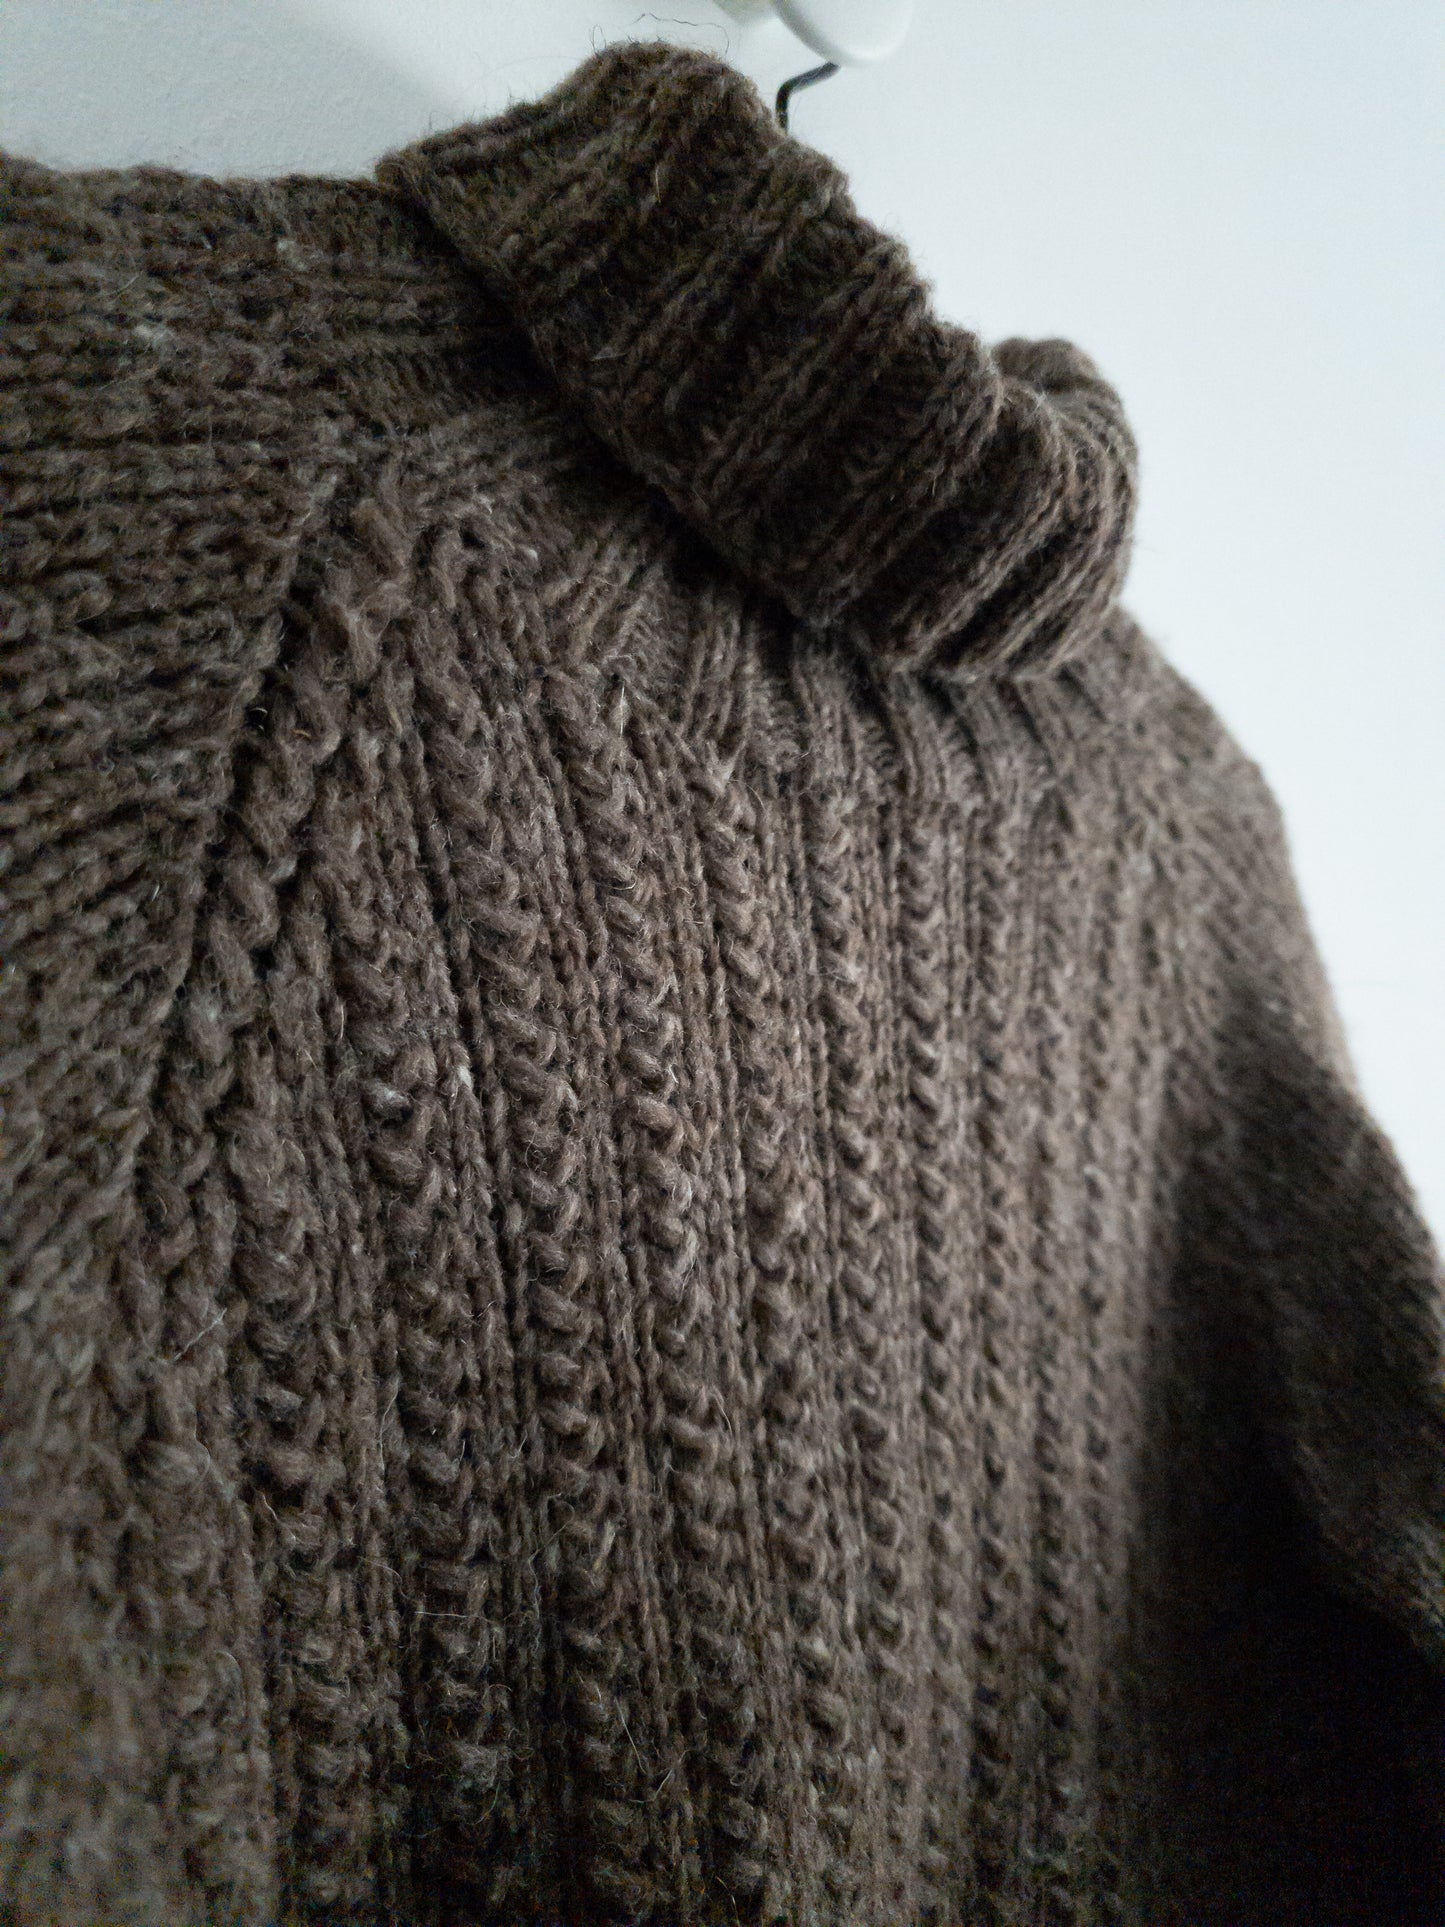 Fisherman's Raglan Sweater - Knitting Pattern